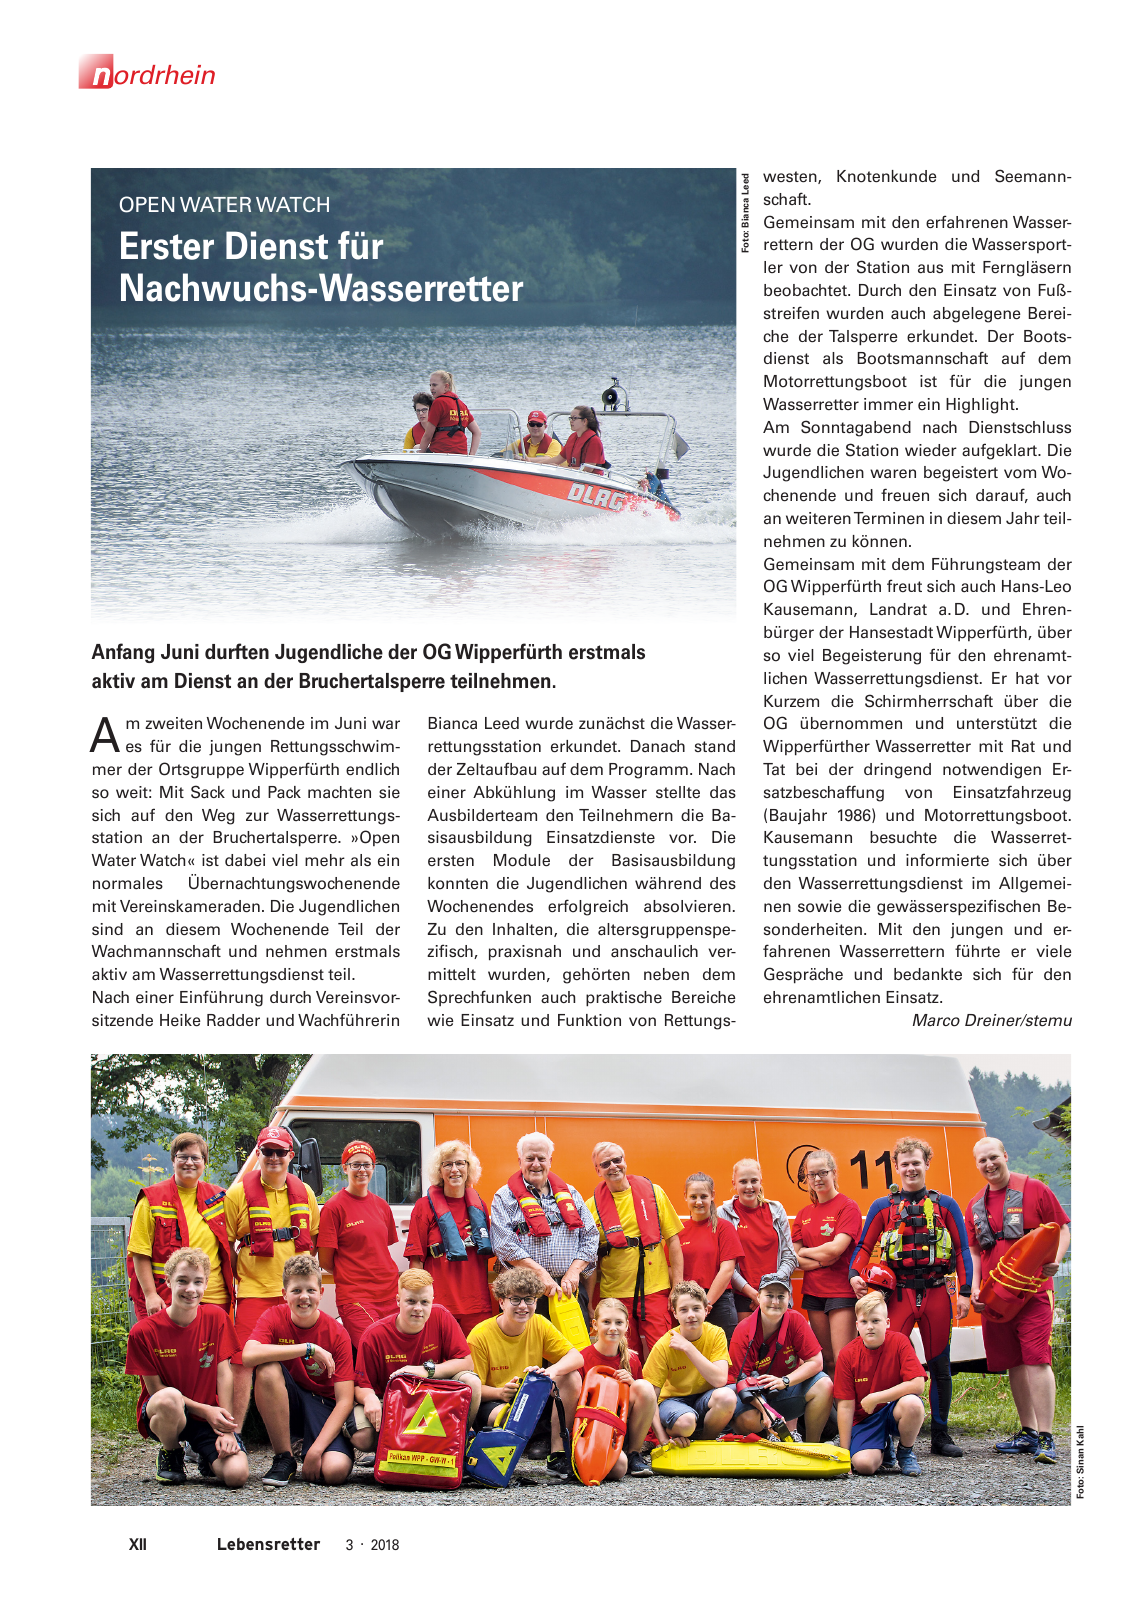 Vorschau Lebensretter 3/2018 - Regionalausgabe Nordrhein Seite 14